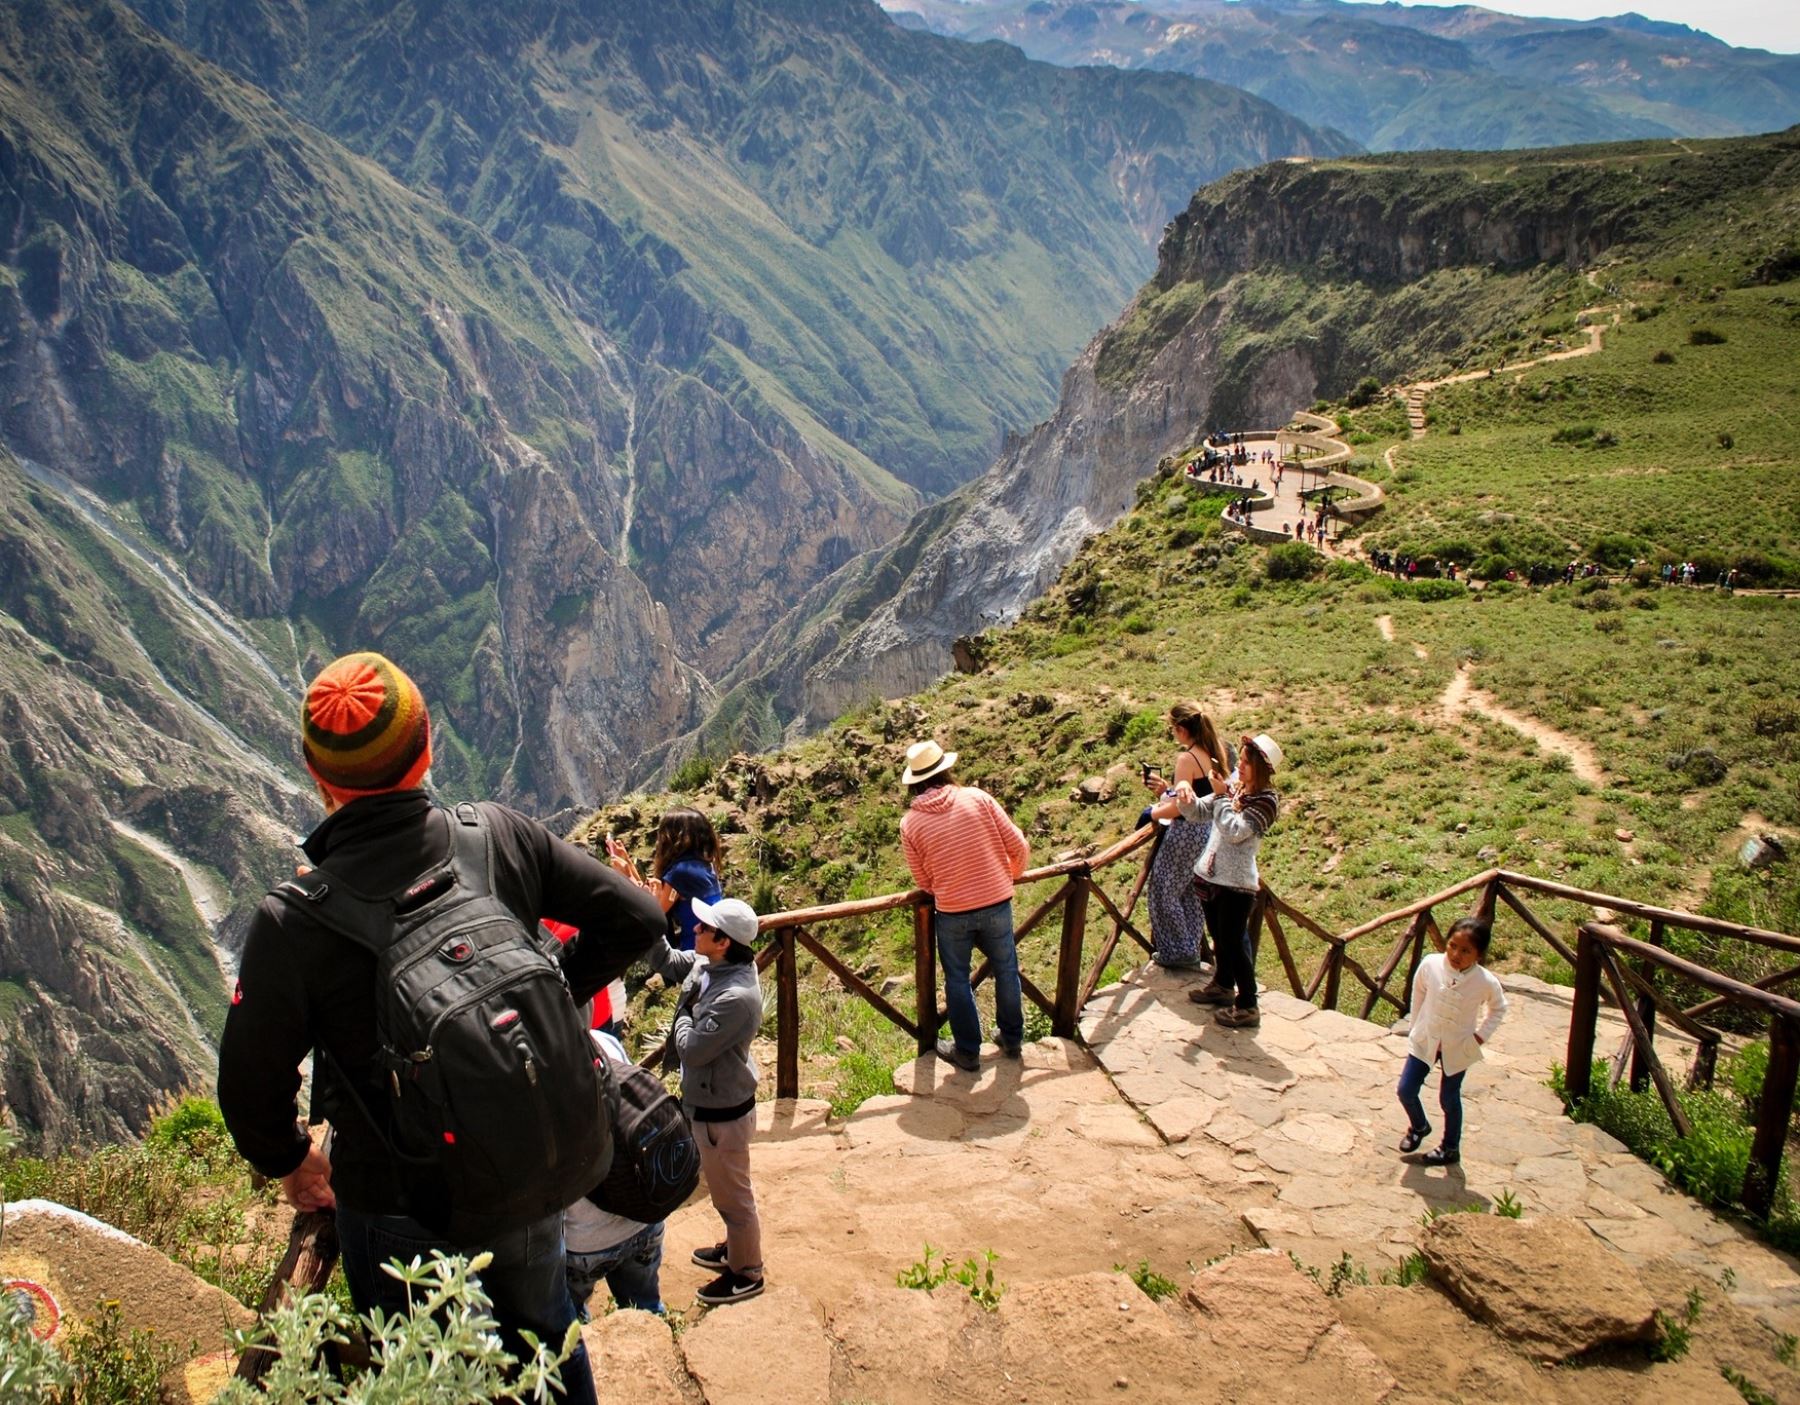 La imponente belleza del Valle del Colca, en Arequipa, impresiona a los turistas. Foto: Autocolca